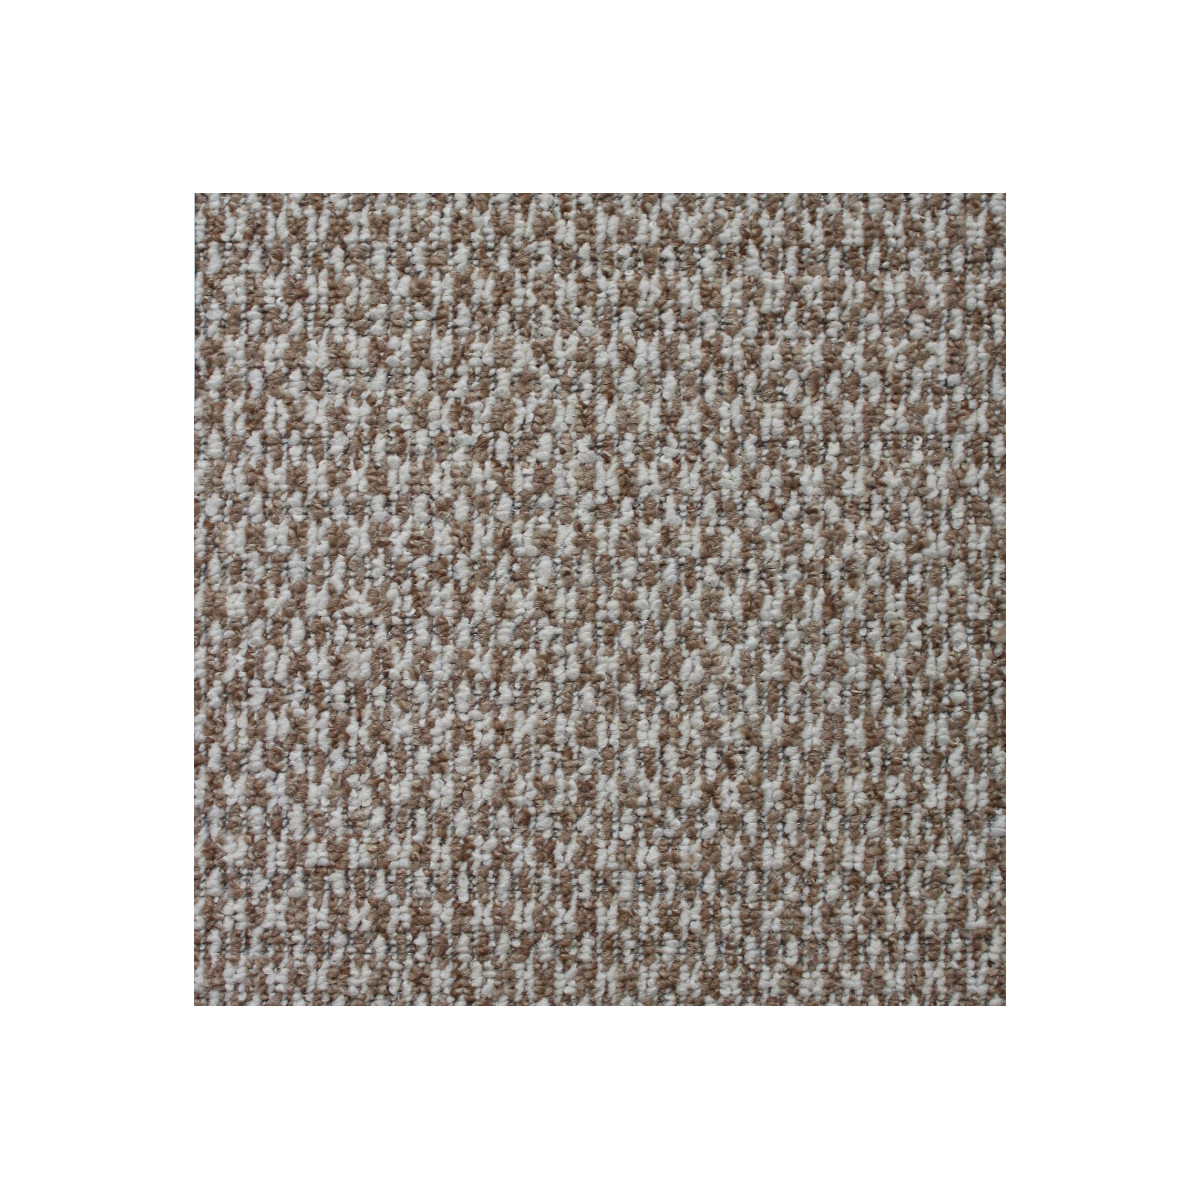 AKCE: 120x140 cm Metrážový koberec Country 63 světle hnědý